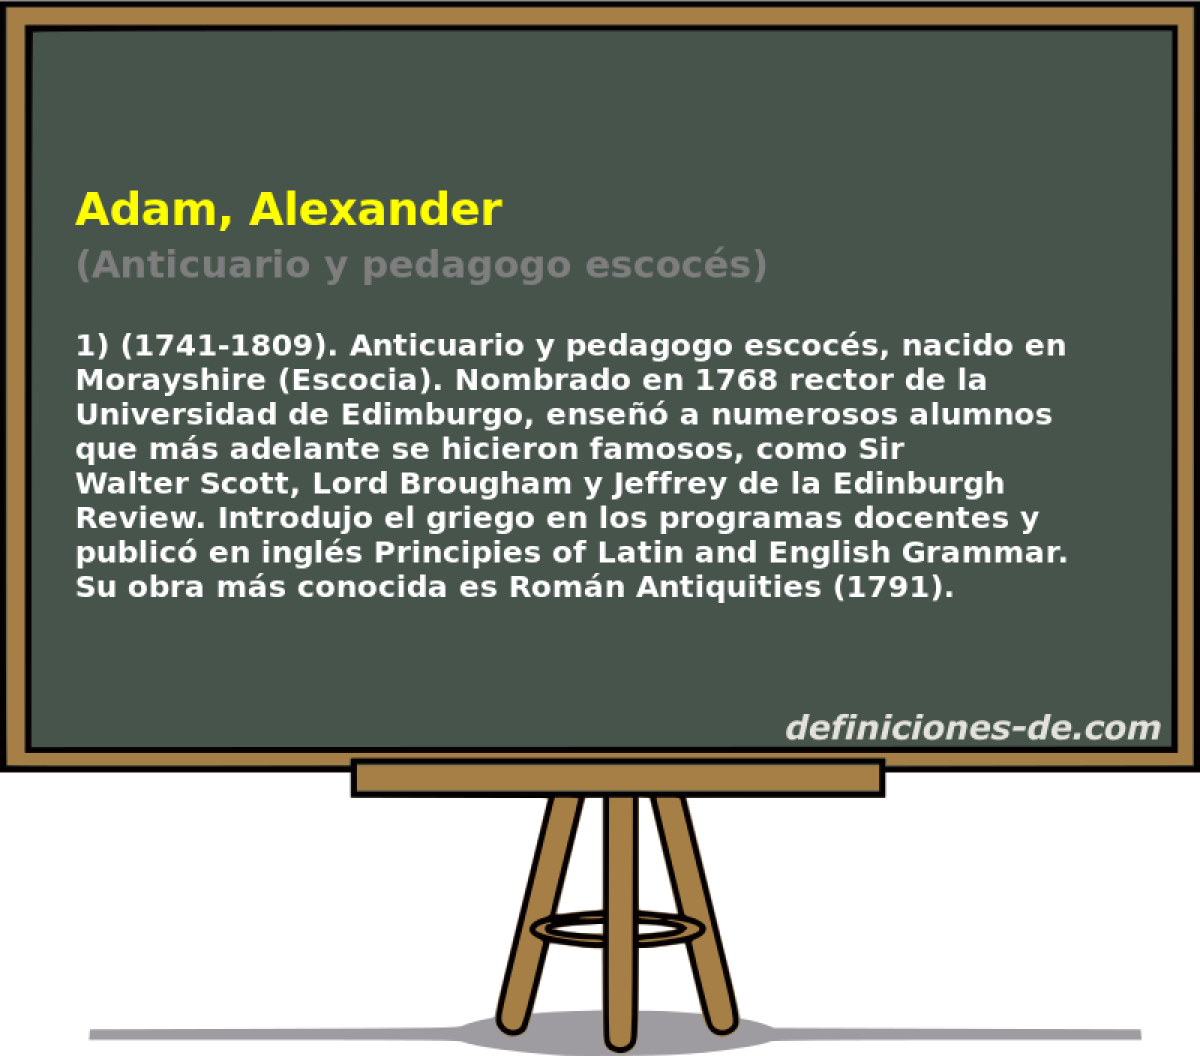 Adam, Alexander (Anticuario y pedagogo escocs)